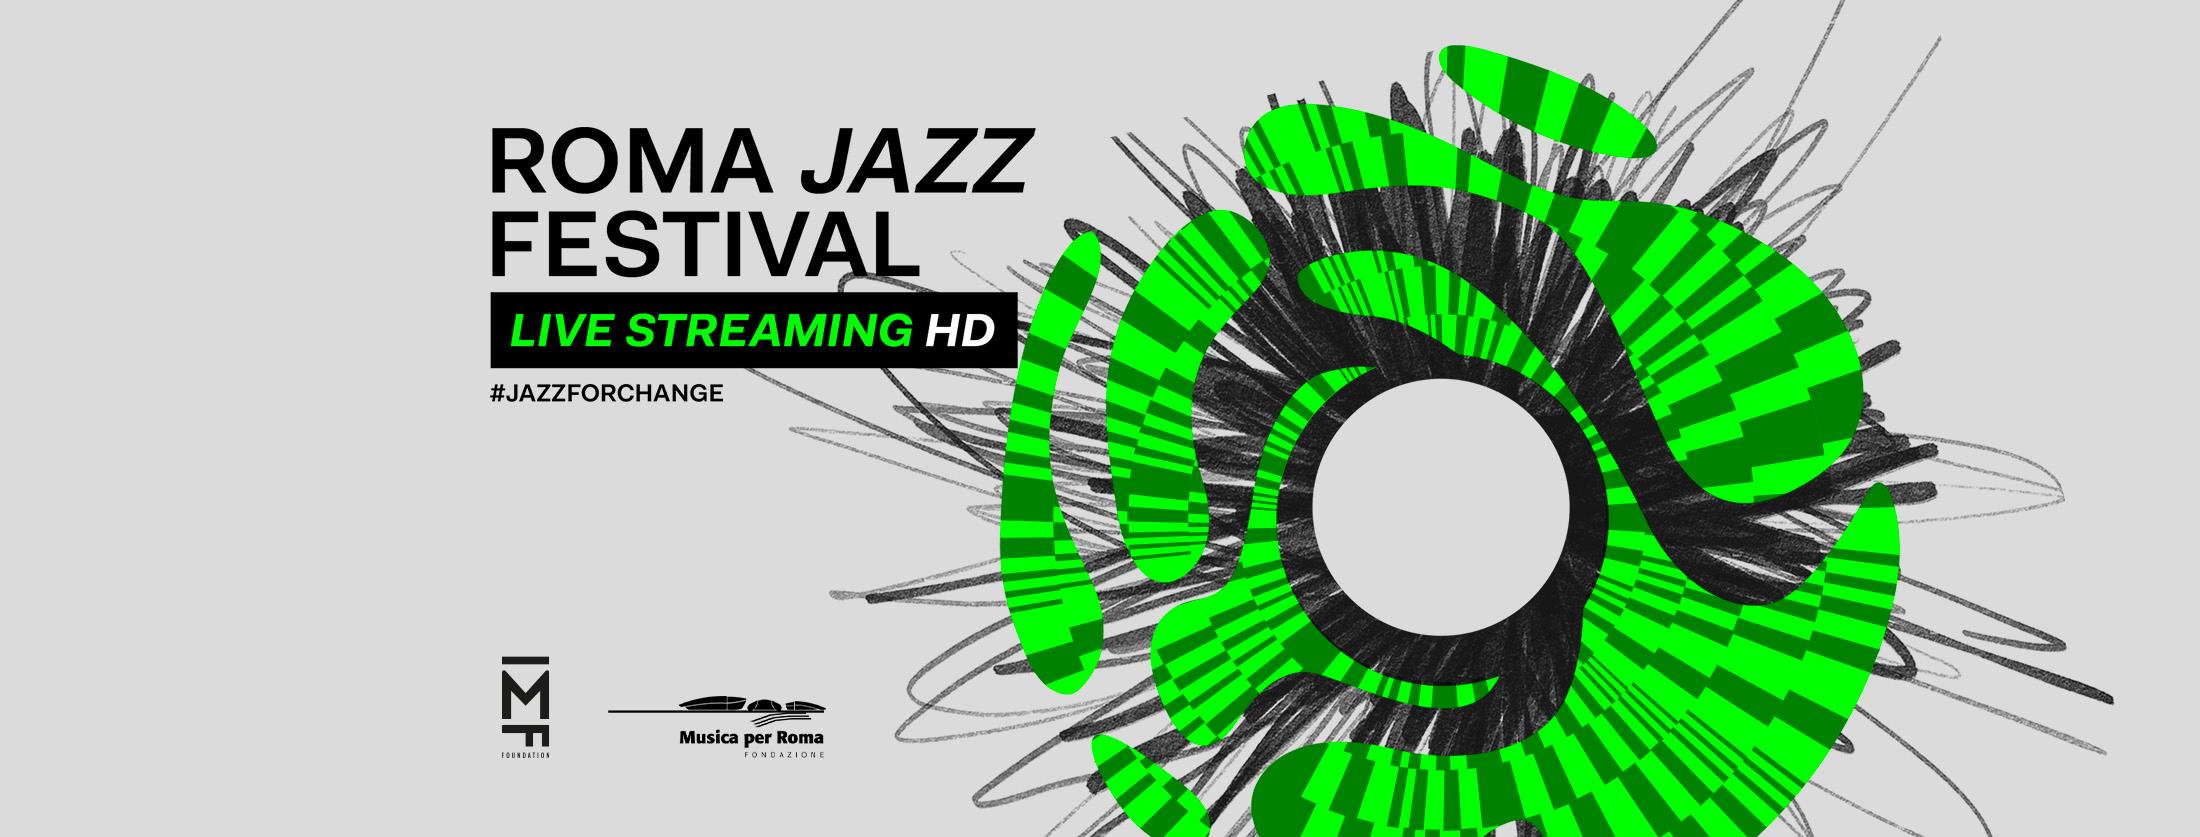 Roma Jazz Festival 2020, il programma completo dal 10 al 20 novembre in live streaming zerkalo spettacolo